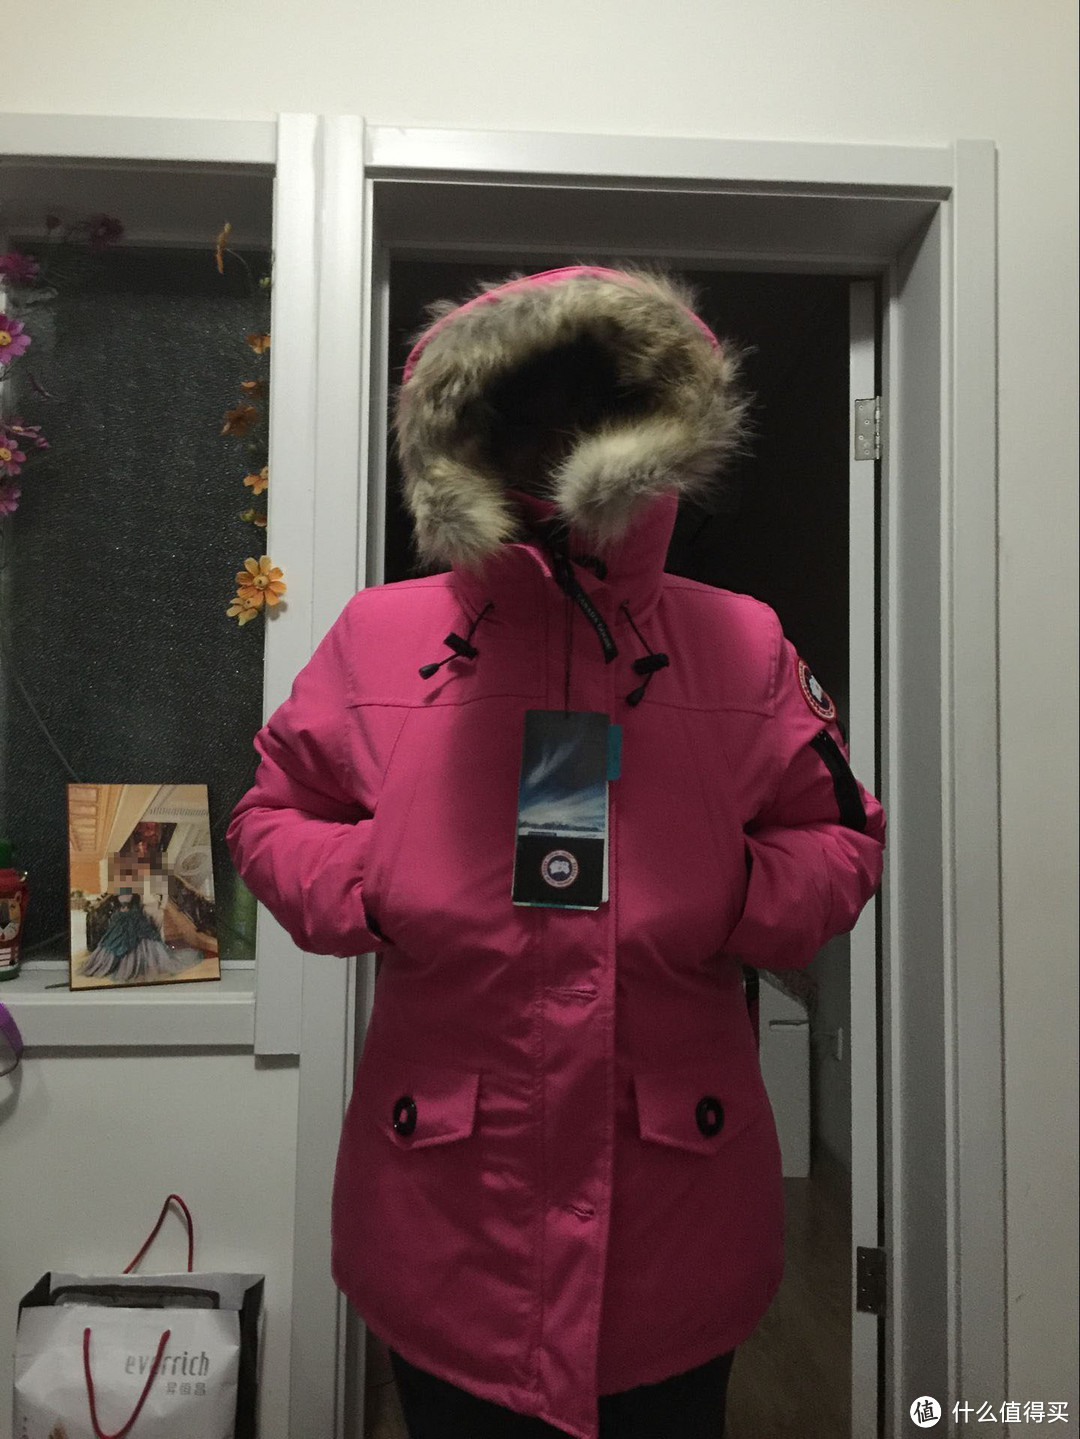 冬季保暖有特效：真人秀一下给媳妇买的Canada goose Montebello 羽绒服